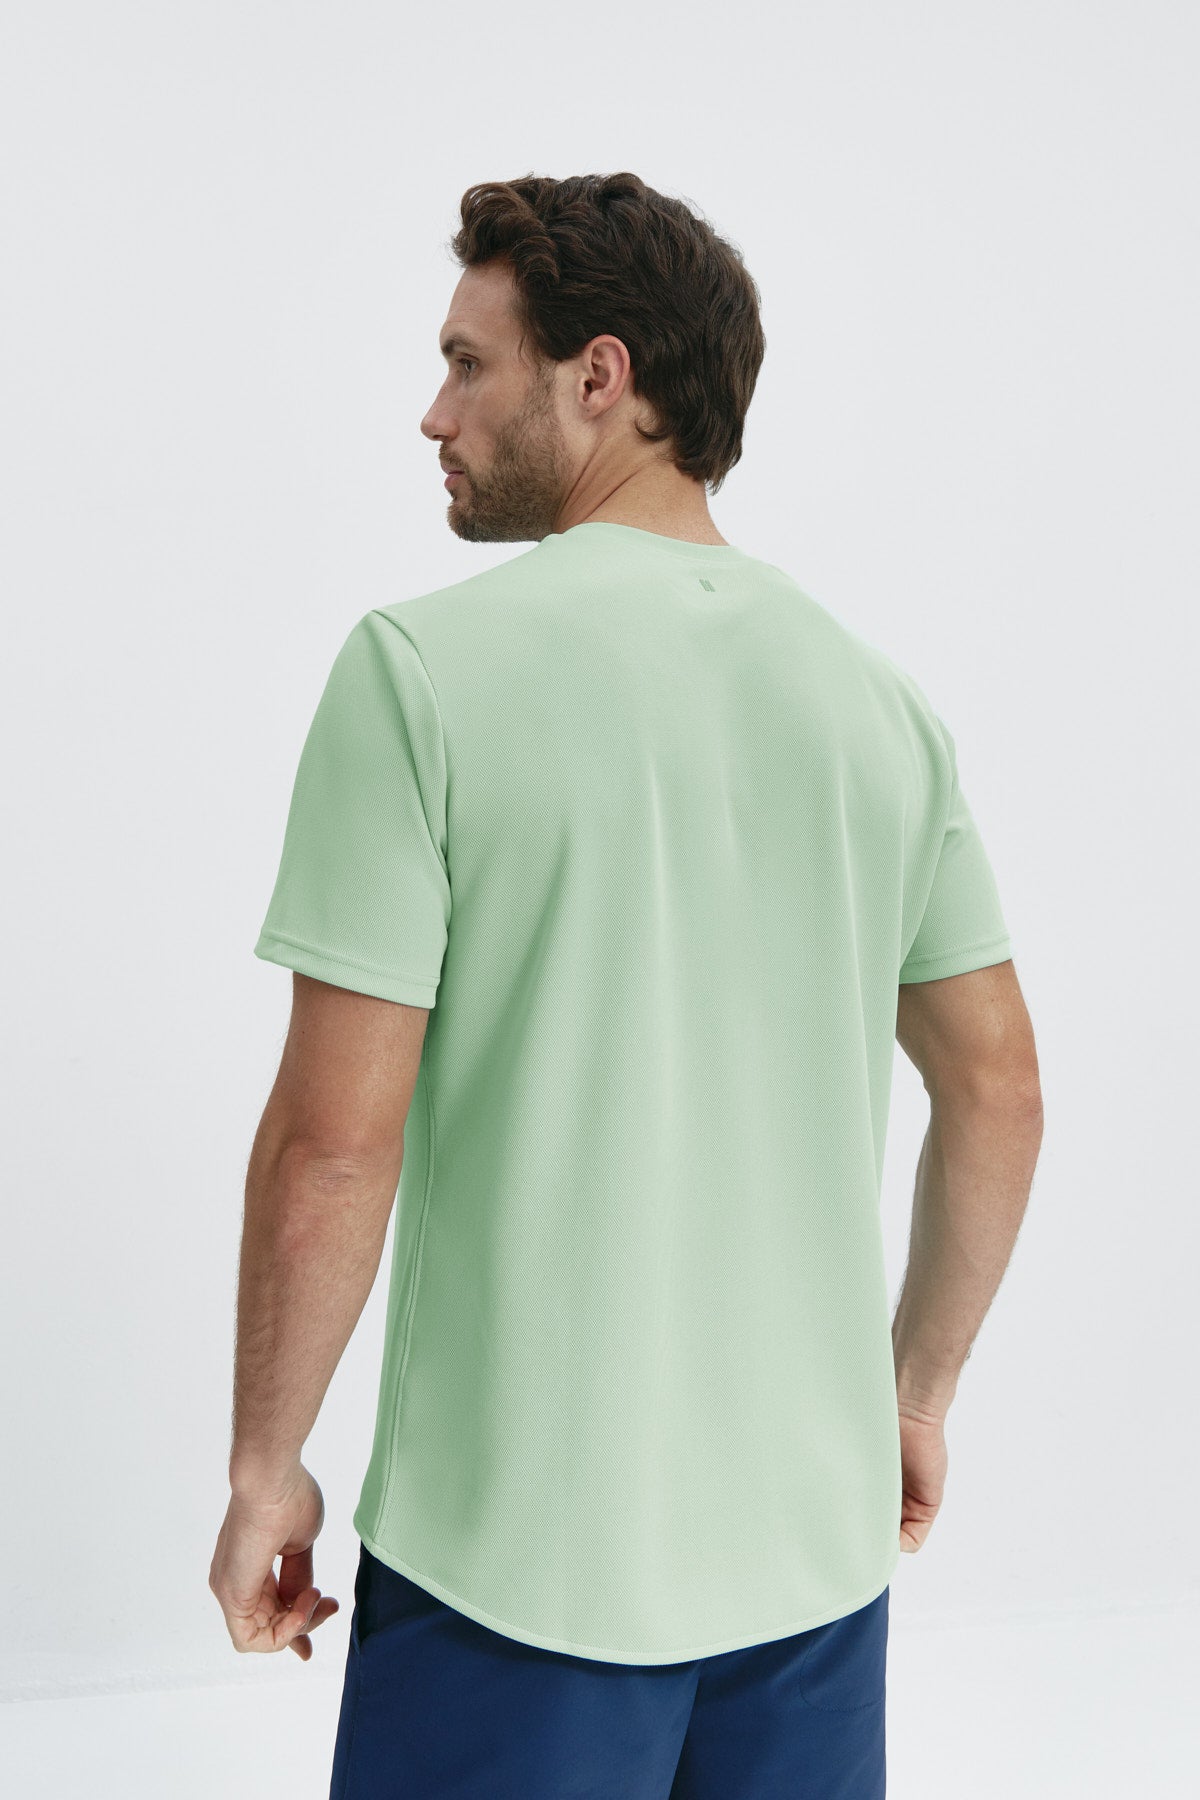 Camiseta ICE para hombre en verde freeze de Sepiia, fresca y resistente a arrugas y manchas. Foto de espalda.